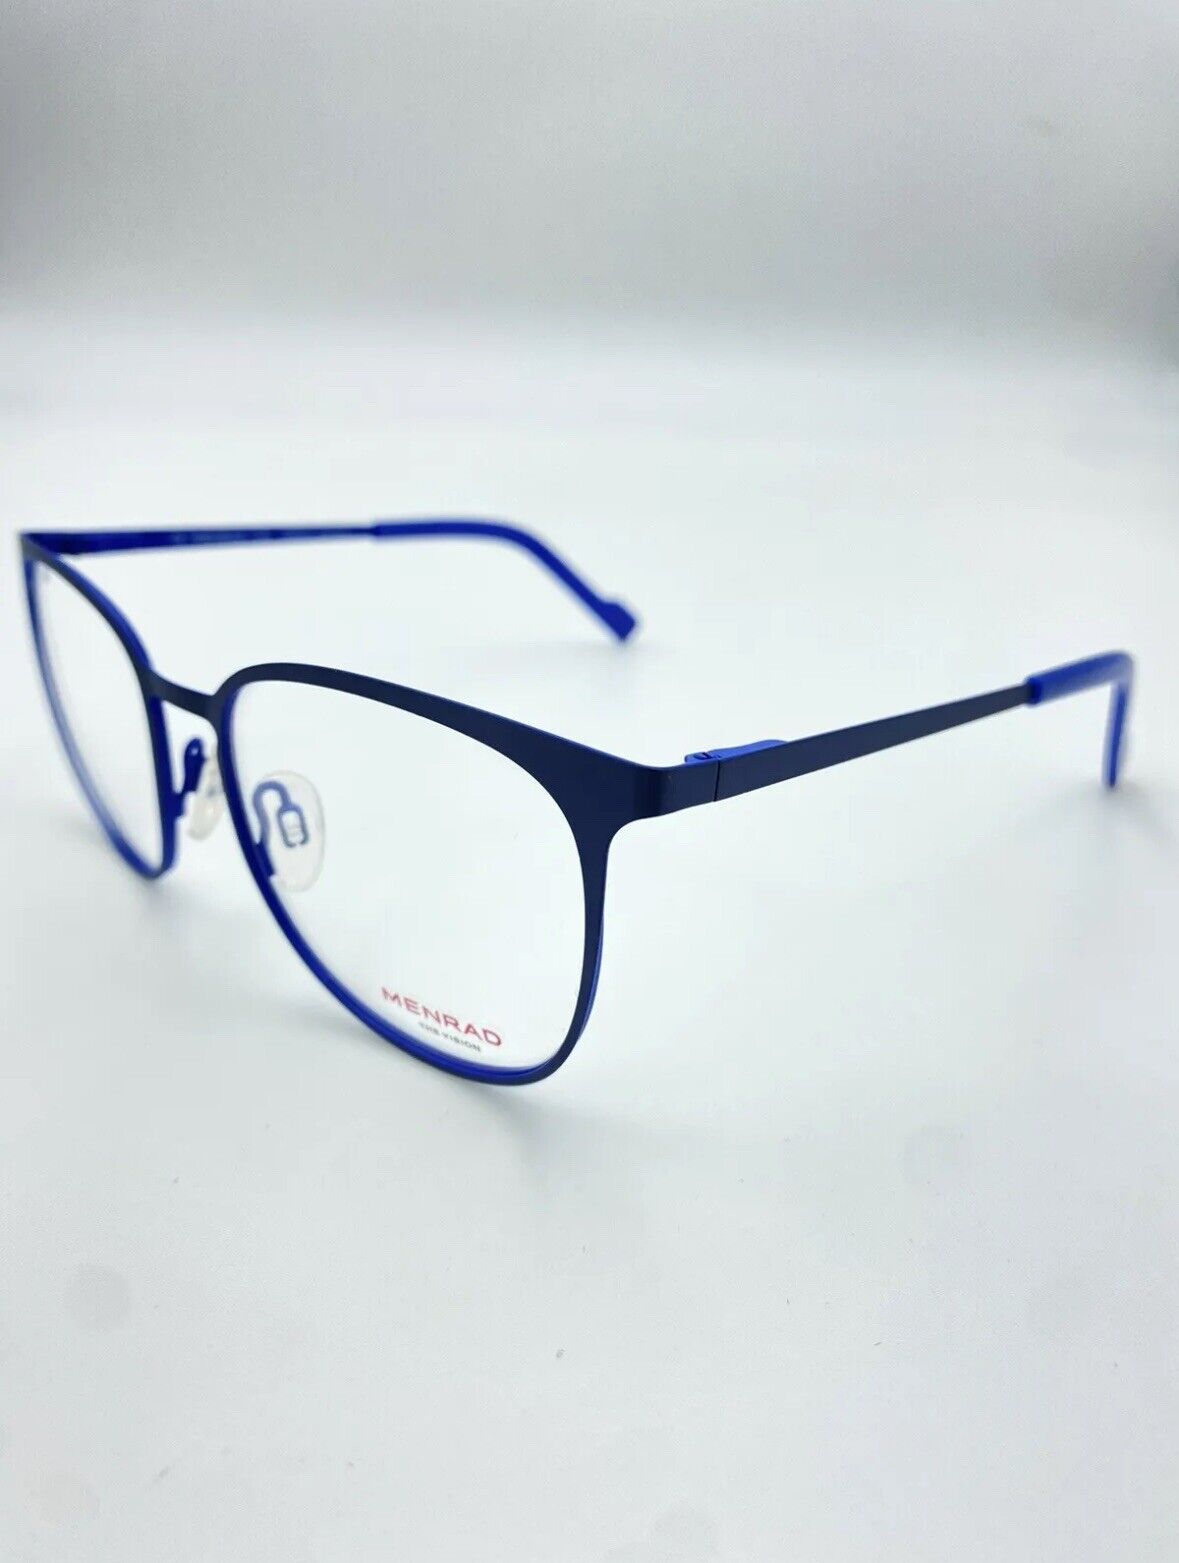 Vintage Menrad 13396 51 17 blau 135 Oval Brille Brillengestell eyeglasses